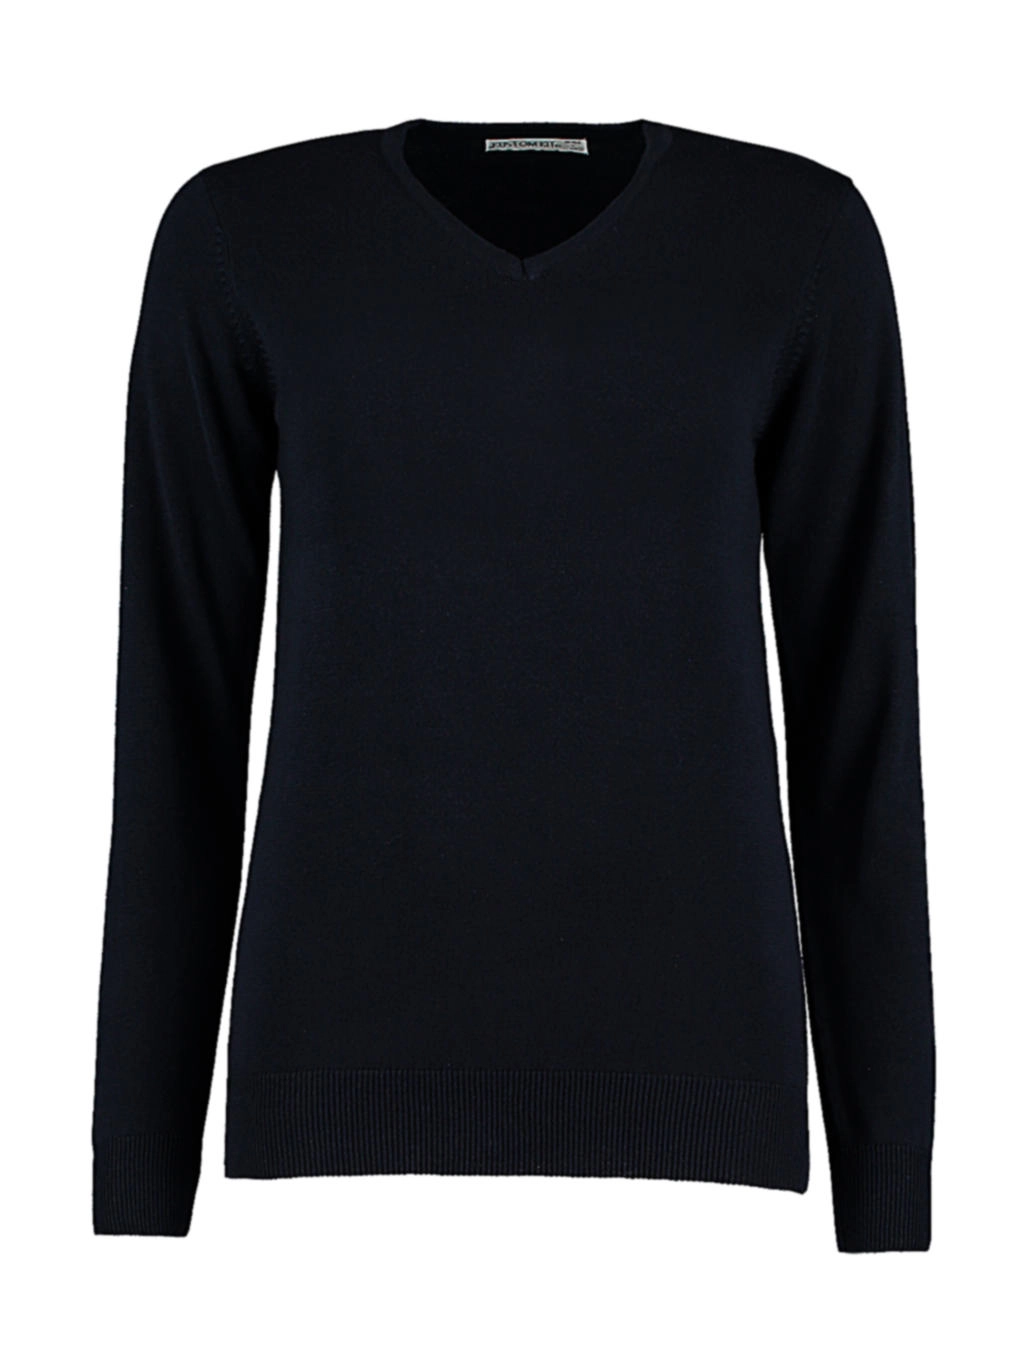 Women`s Classic Fit Arundel Sweater zum Besticken und Bedrucken in der Farbe Navy mit Ihren Logo, Schriftzug oder Motiv.